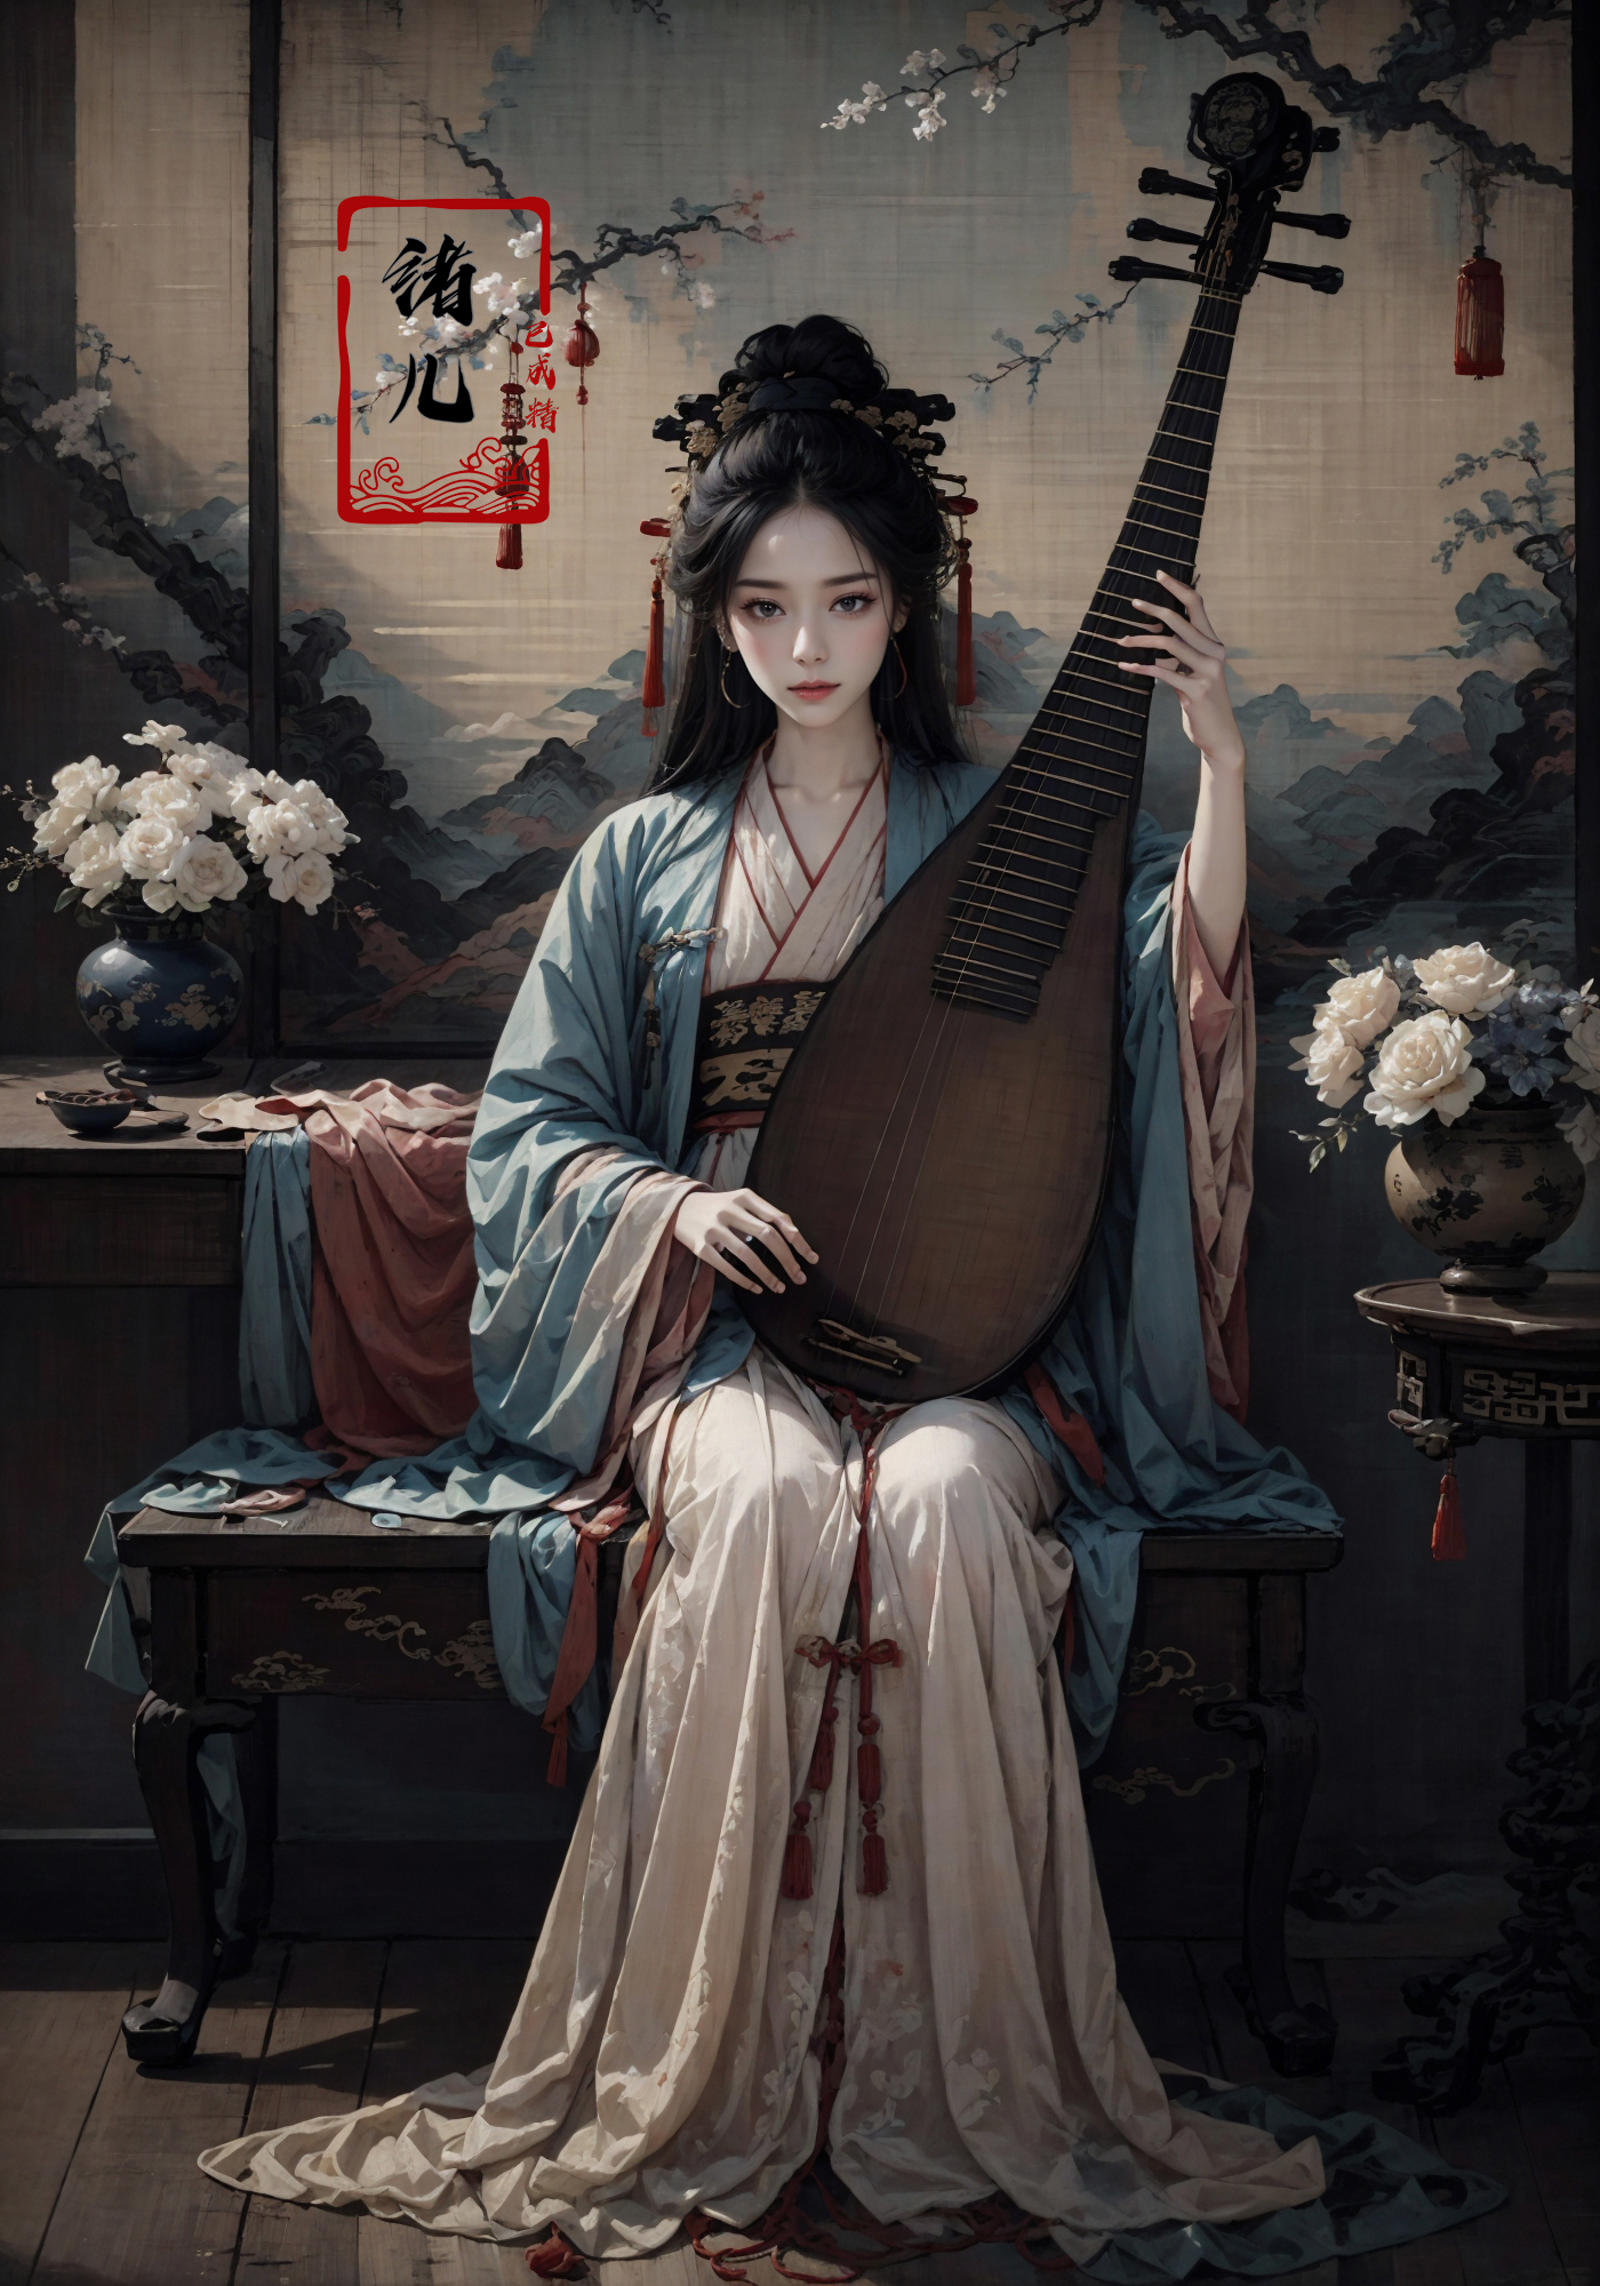 绪儿-琵琶  lute image by XRYCJ